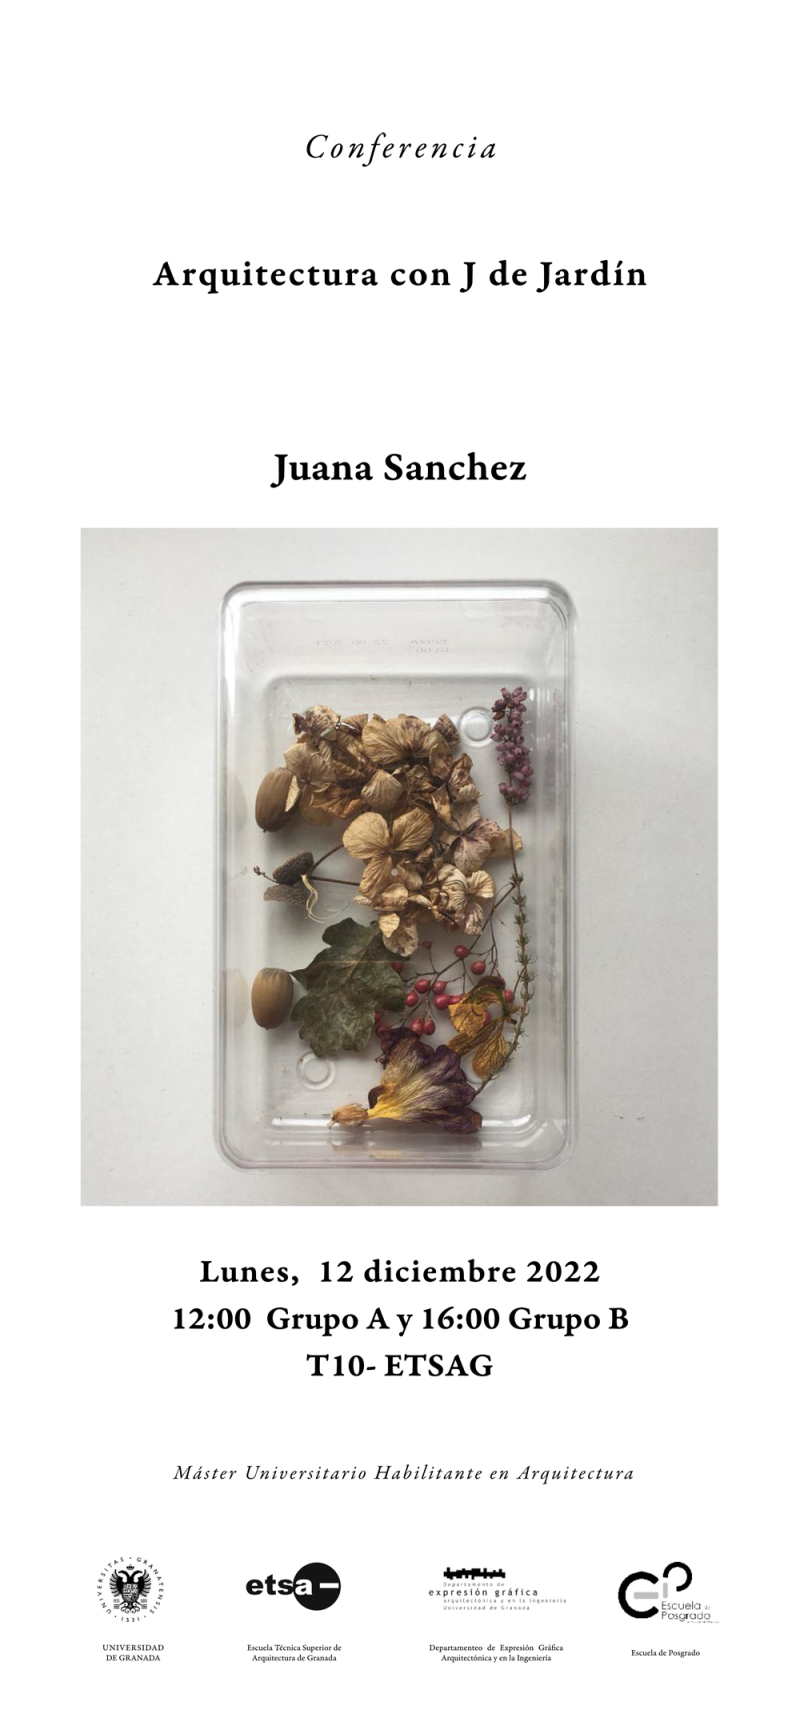 Cartel de la Conferencia de Juana Sánchez